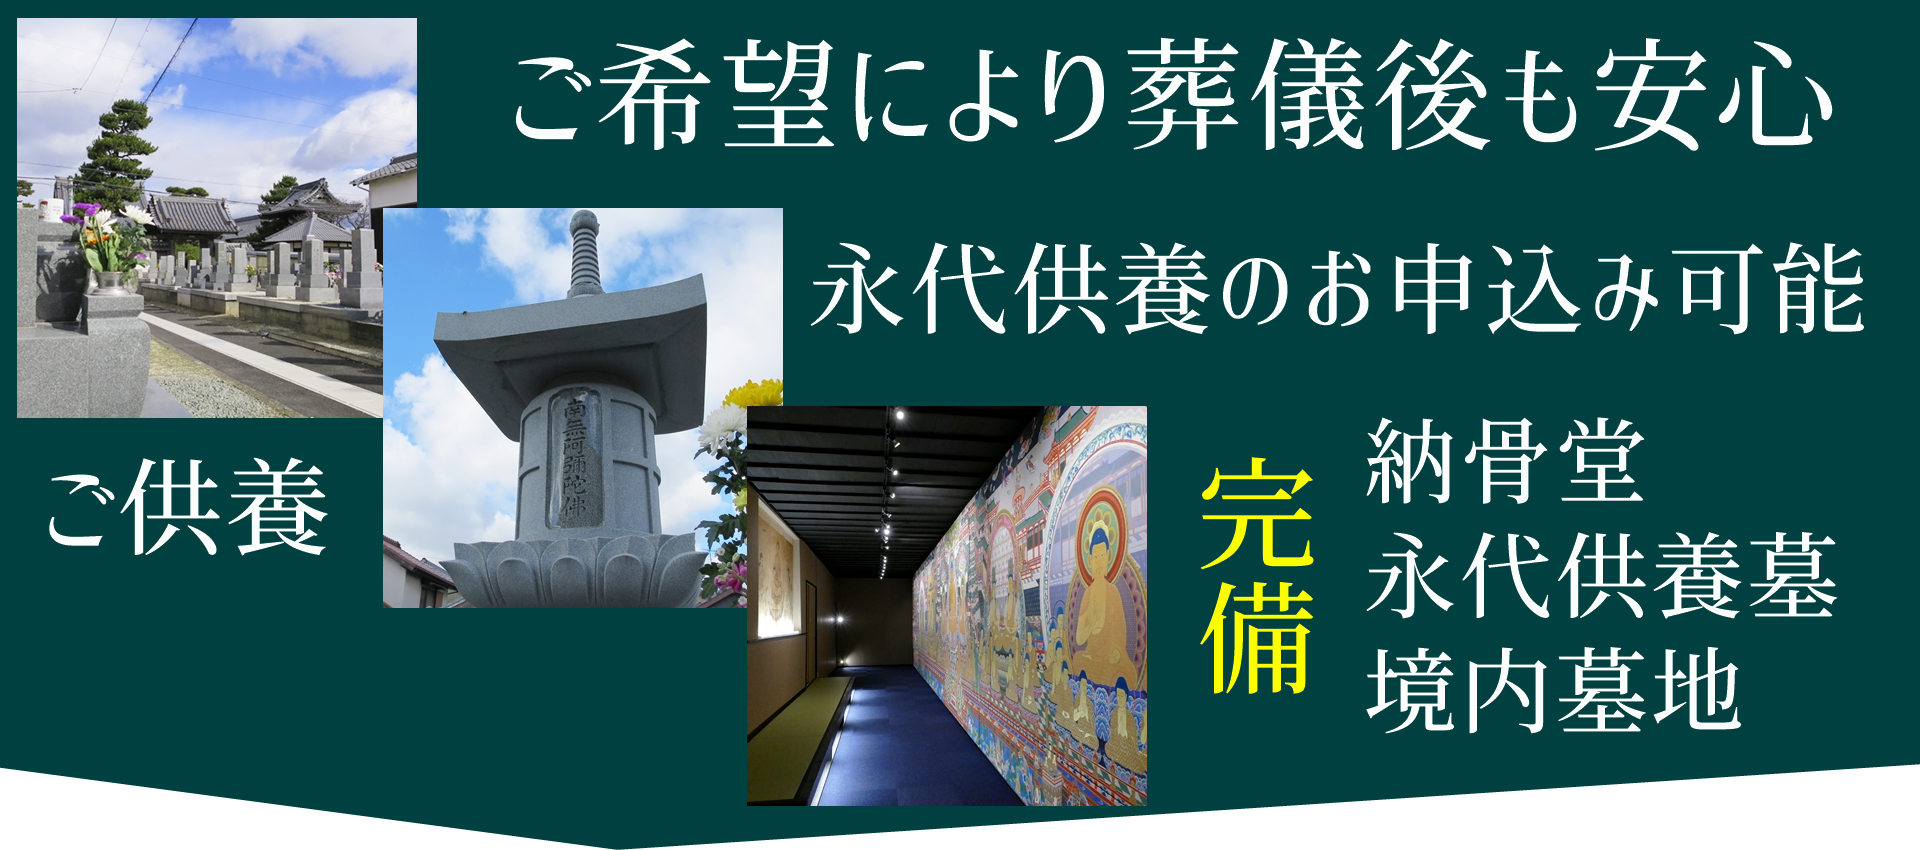 愛知県三河地方、愛知県全域、静岡県西部、どこの地域からでも利用可能です。